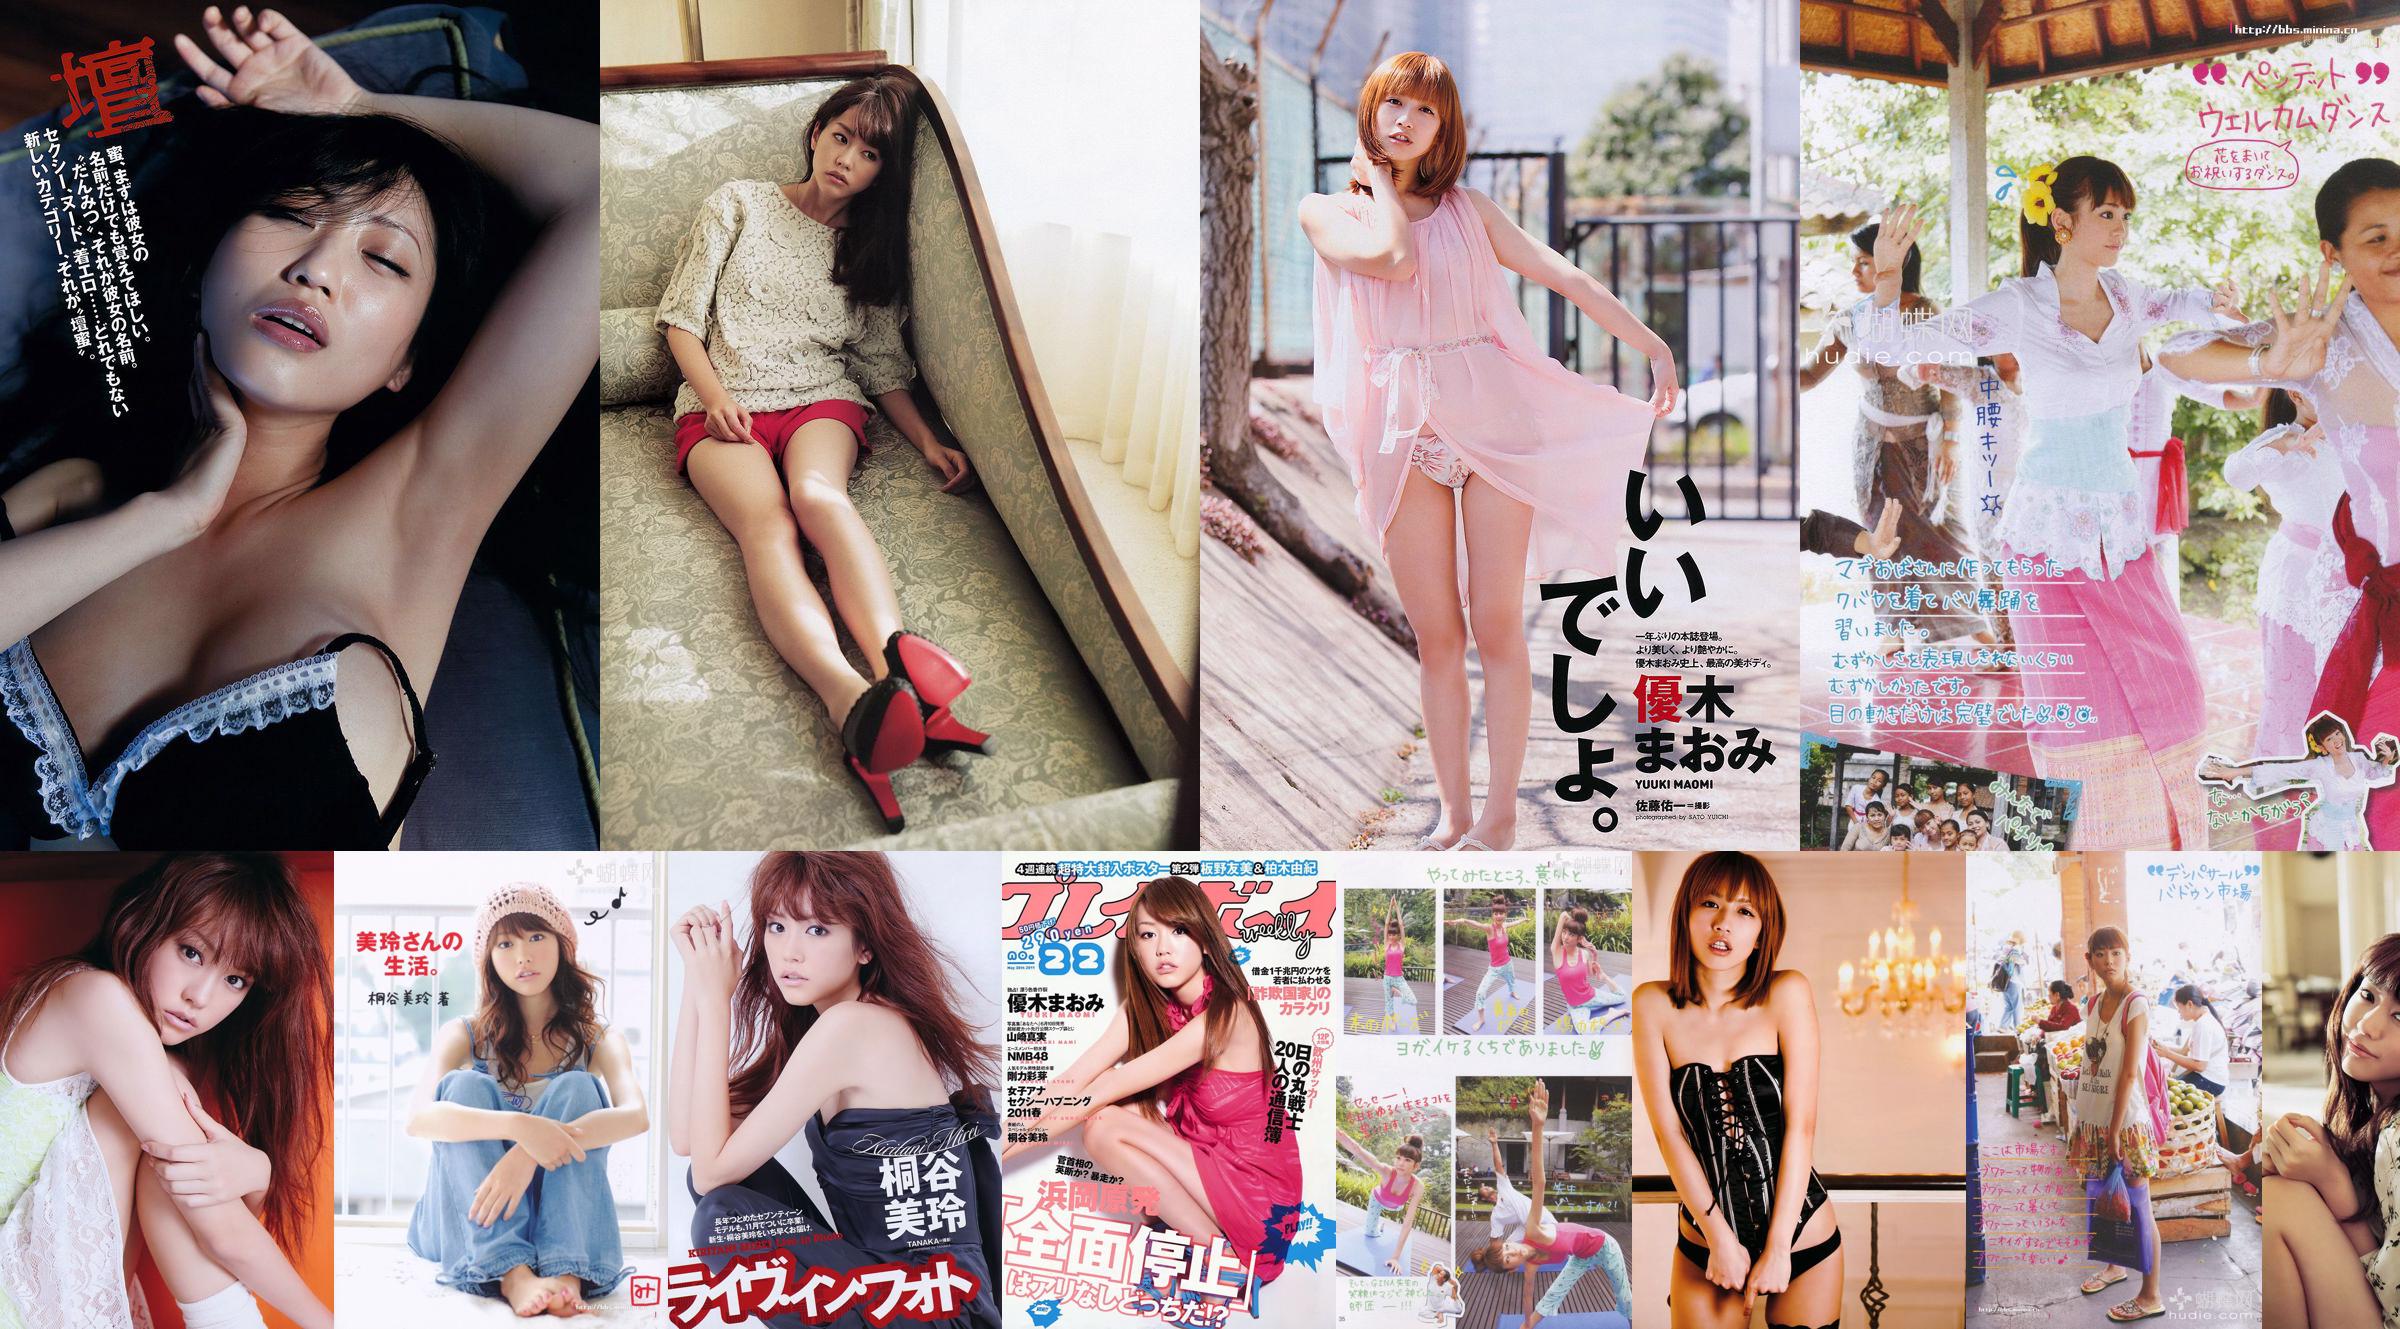 키리타니 미레 아키 니토 미사키 타카하시 아이 아오키 AKB48 이케다 나츠키 [주간 플레이 보이] 2011 No.38 Photo Magazine No.b60143 페이지 2